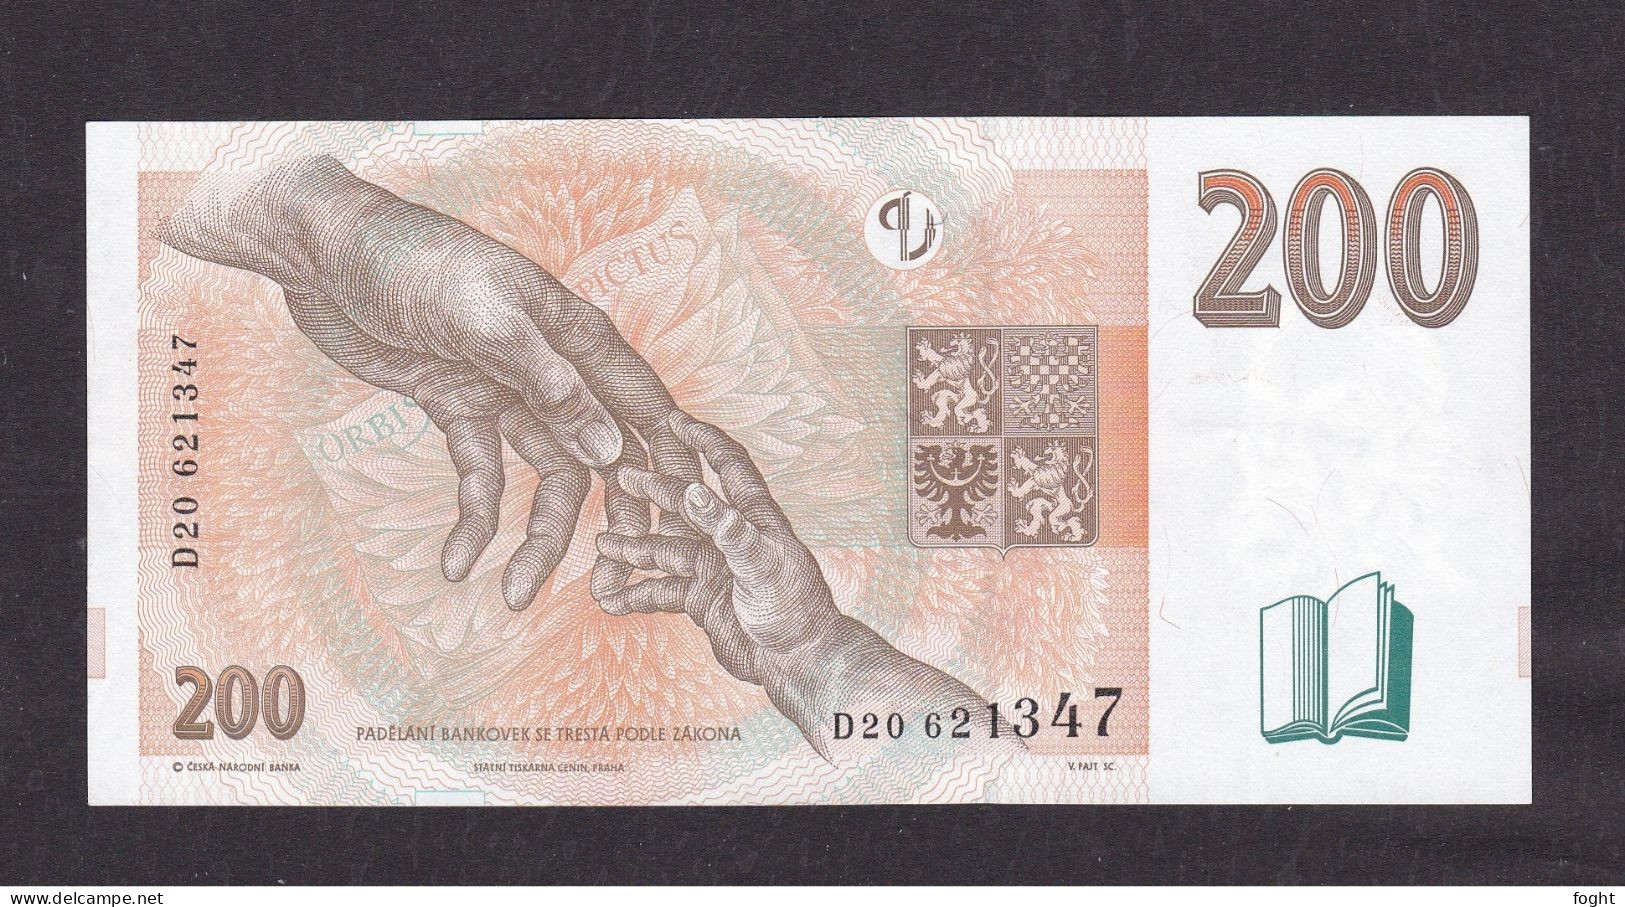 1998 Czech Republic Czech National Bank Banknote 200 Korun,P#19B - Czech Republic